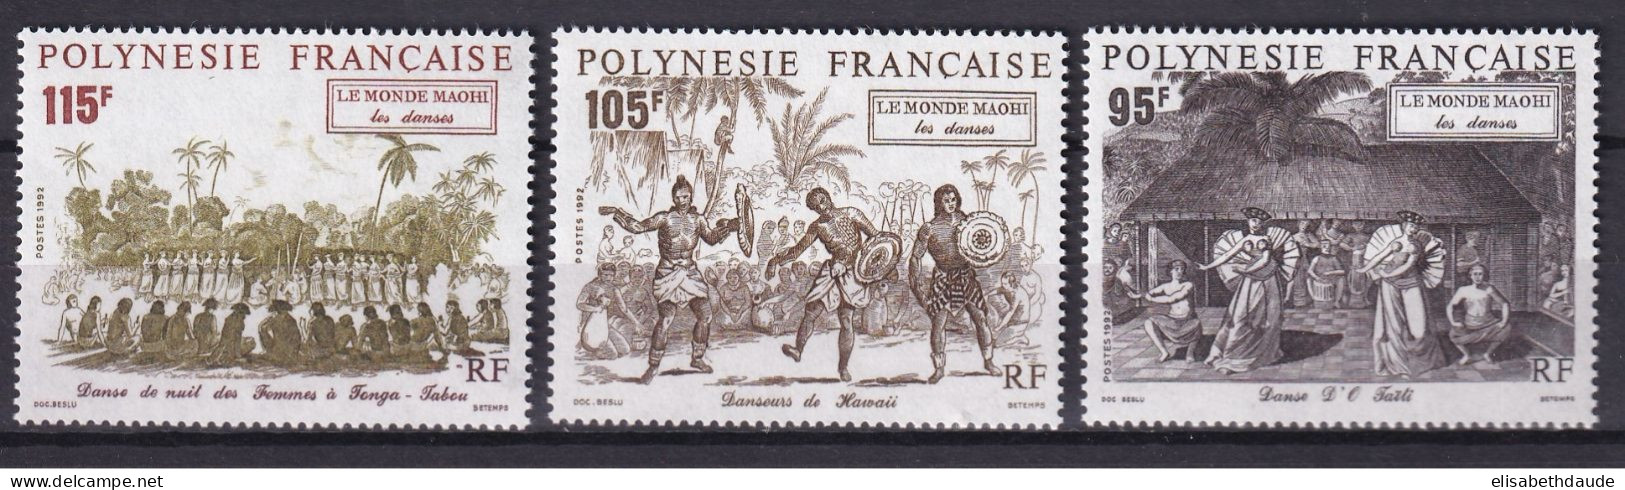 POLYNESIE - 1992 - PORT GRATUIT A PARTIR DE 5 EUR. D'ACHAT - YVERT N° 410/412 ** MNH - DANSES - COTE = 7.65 EUR. - Unused Stamps